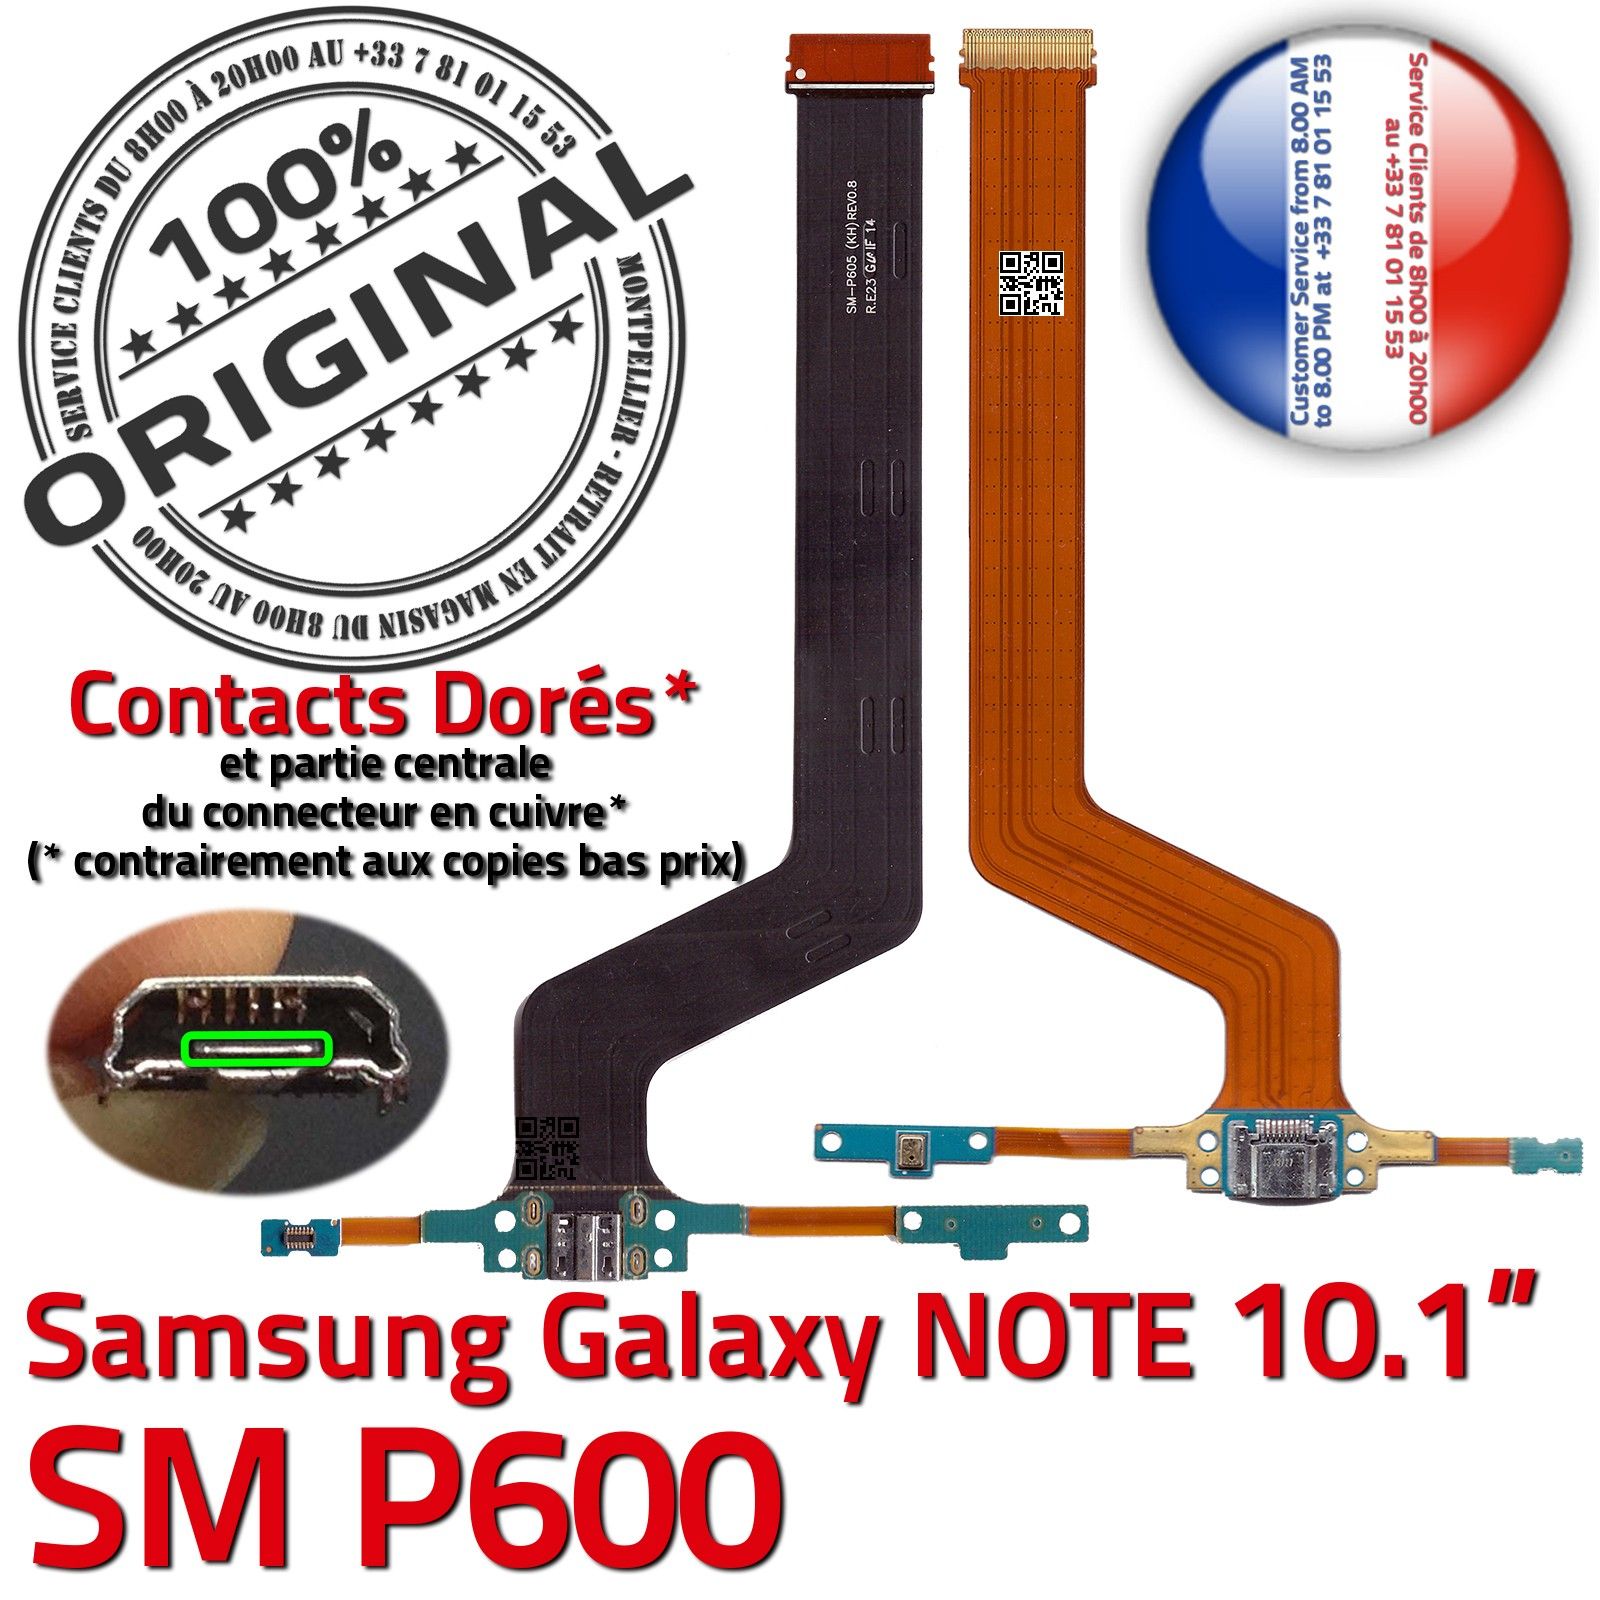 NOTE SM P600 Pen ORIGINAL Samsung Galaxy Connecteur de Charge Chargeur MicroUSB Nappe OFFICIELLE Qualité Contact Doré Réparation